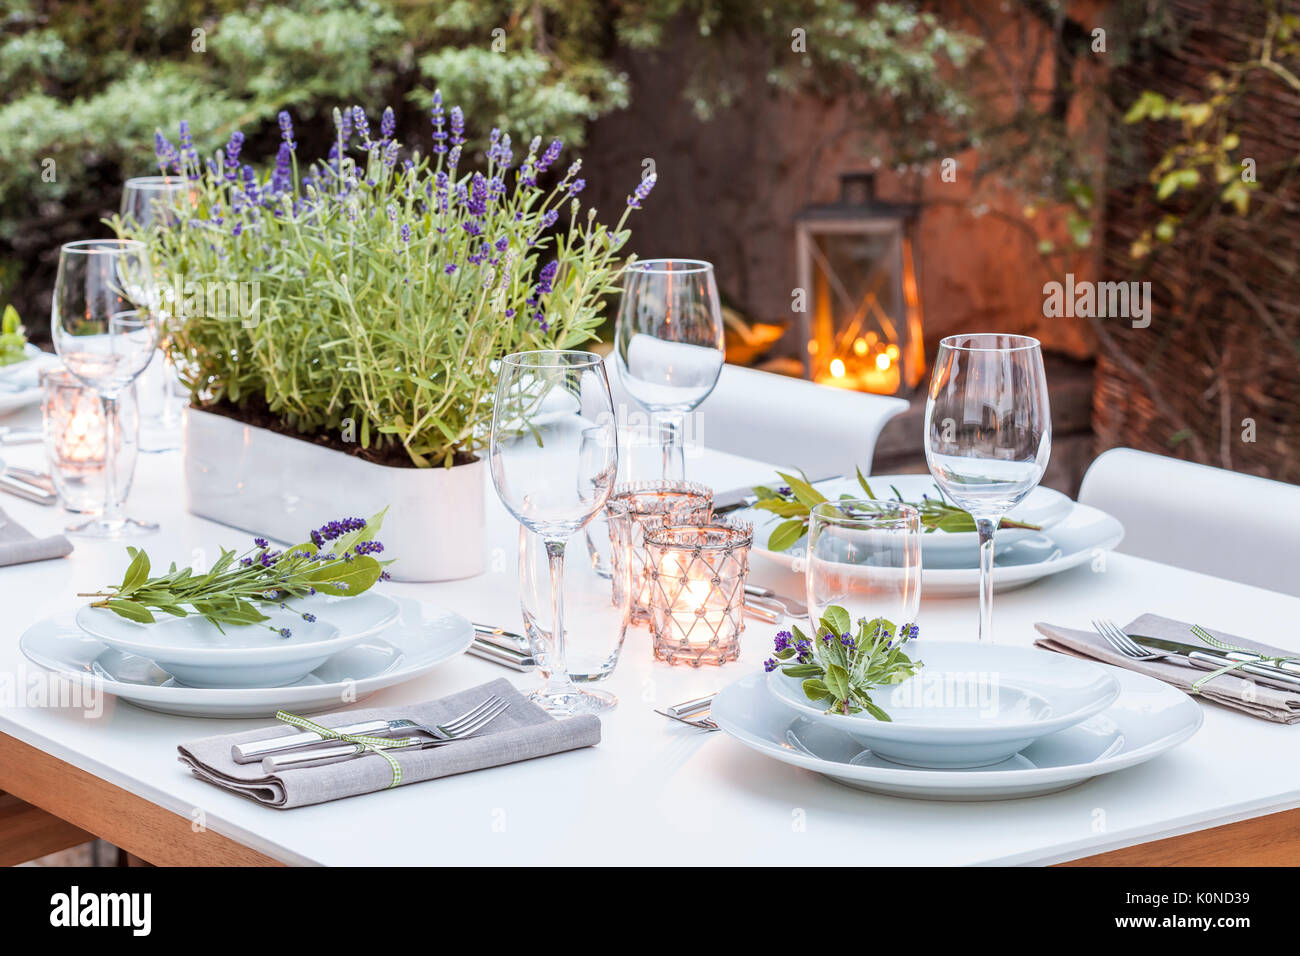 Deutschland, Garten Terrasse, Holzdeck, Gartenmöbel, moderne Sitzgruppe, gedeckter Tisch, festlich, Tischdeko Lavendel, Lichter Foto Stock